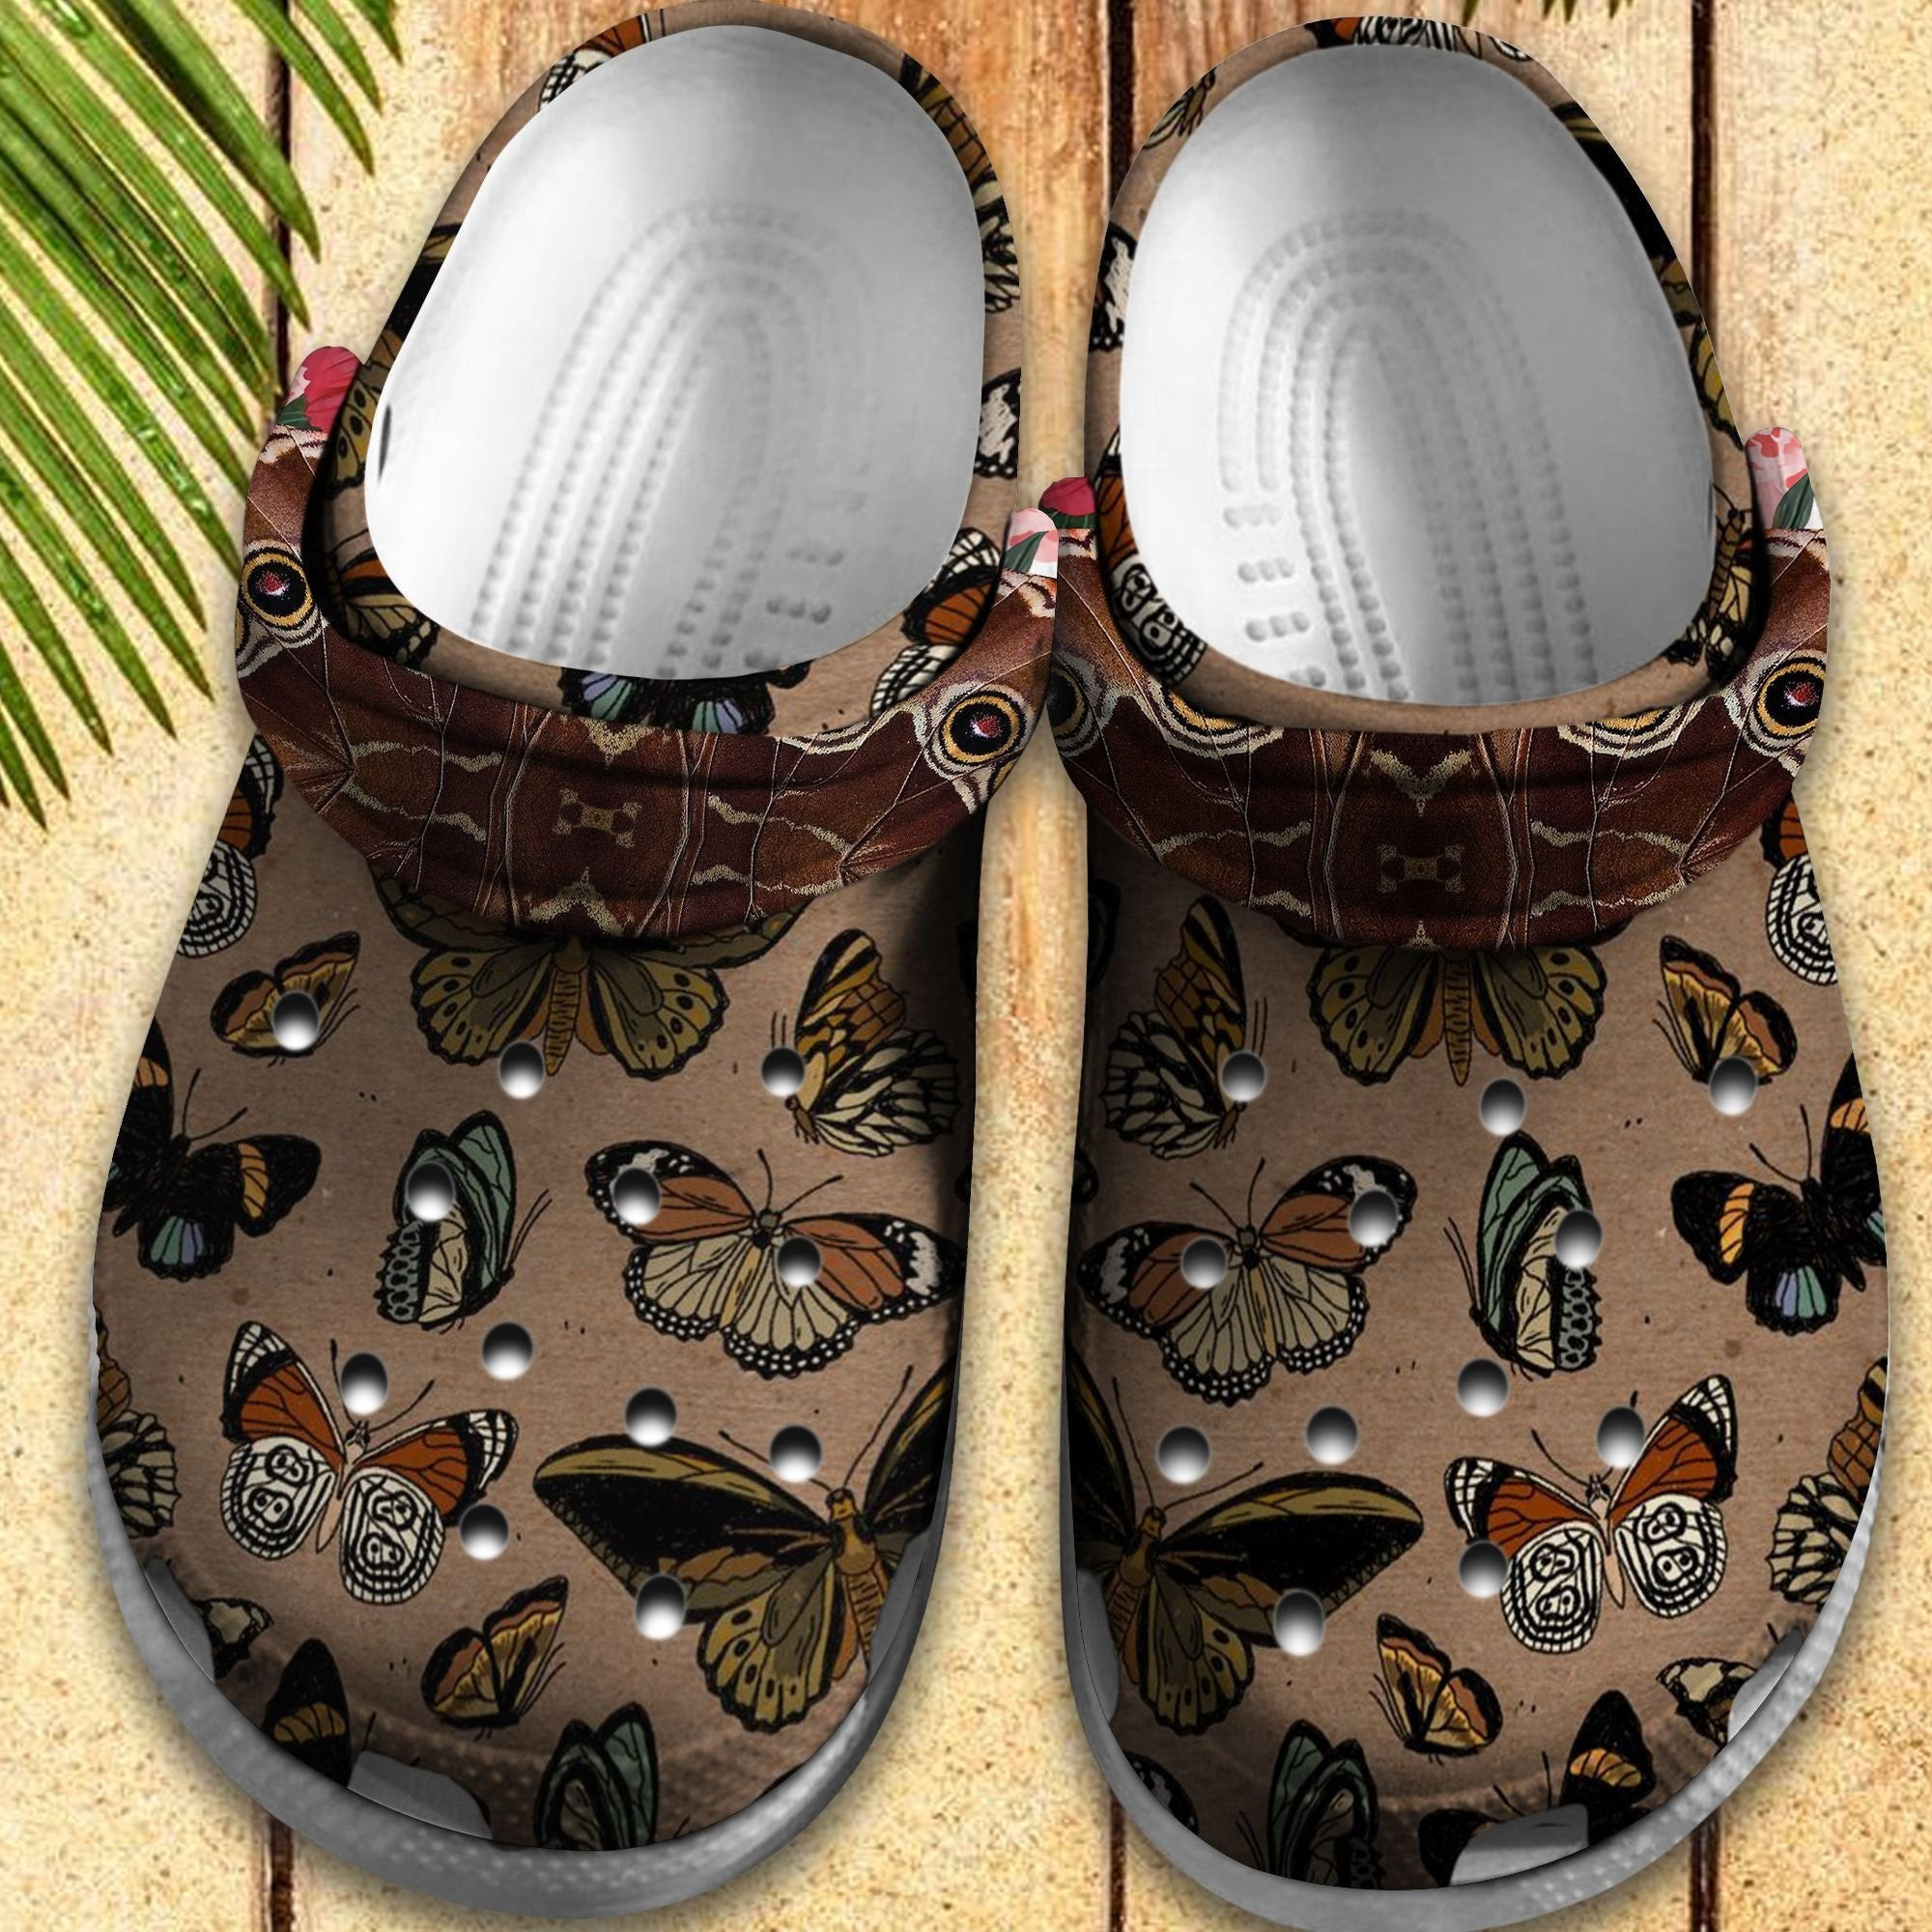 Butterflies Vintage Shoes - Butterflies Garden Crocs Clog Gift For Women Girl Grandma Mother